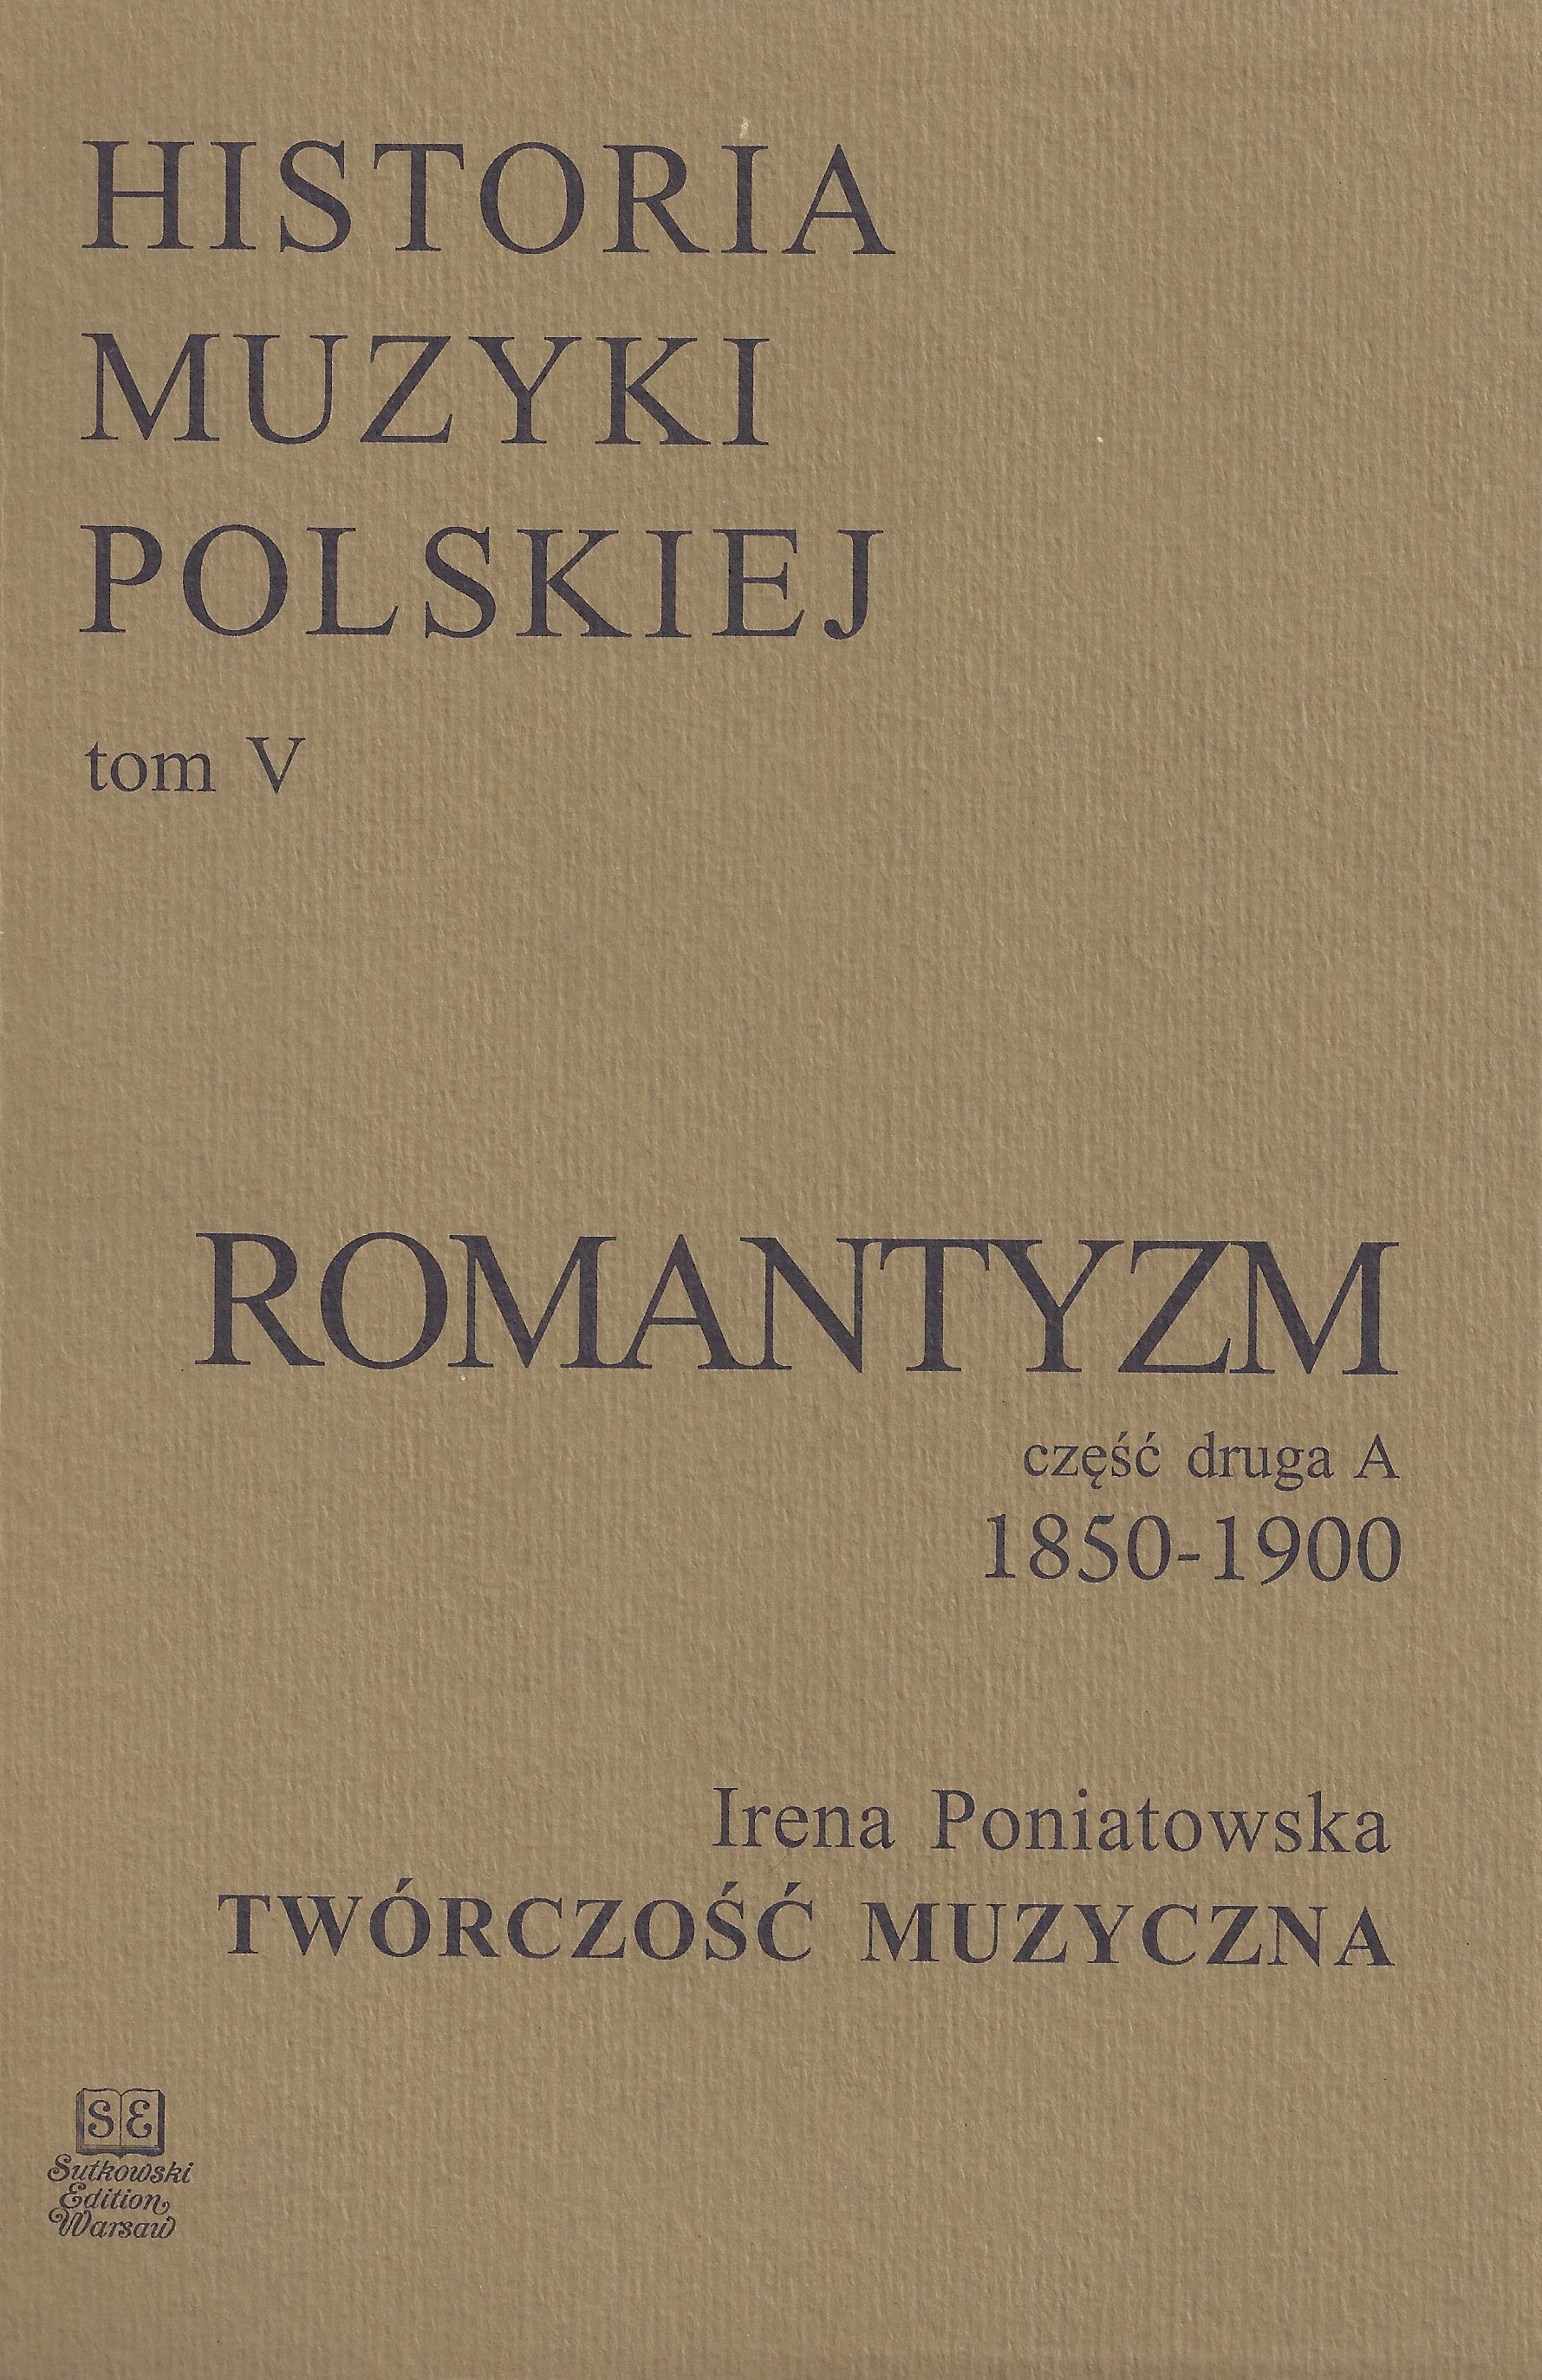 Historia Muzyki Polskiej tom V cz. 2A – Romantyzm (1850-1900)